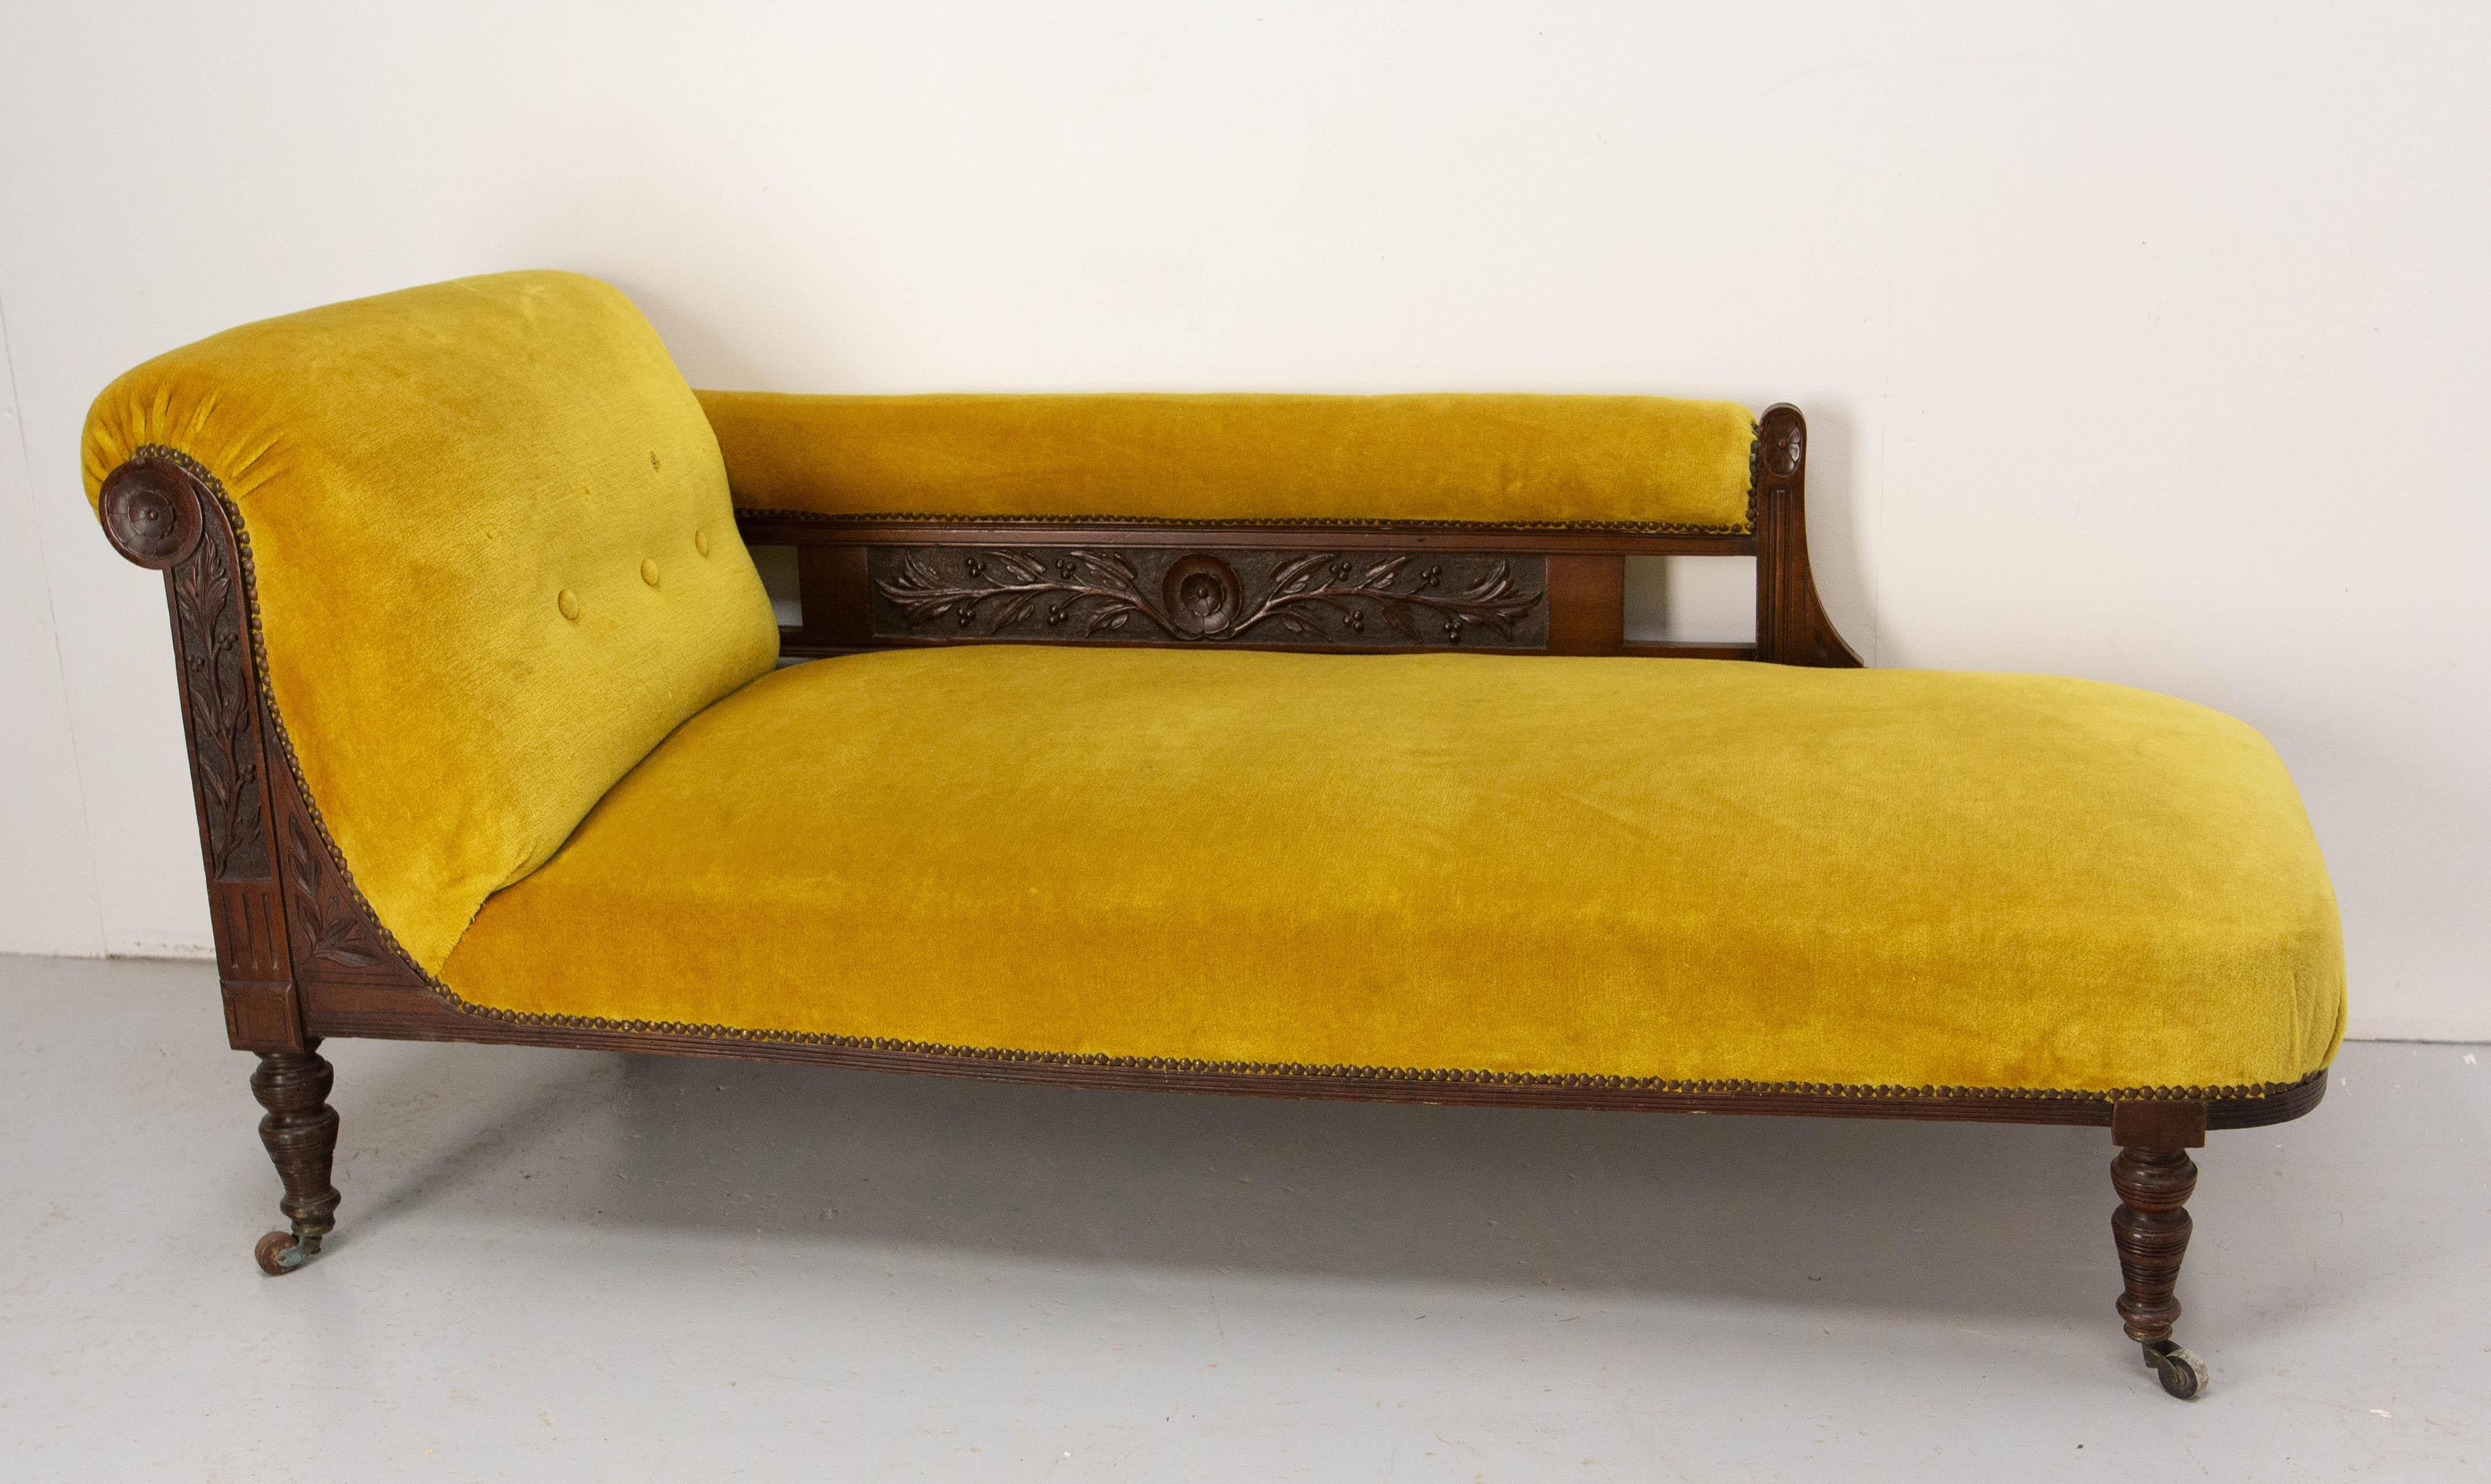 Louis-Philippe-Bankett oder -Sofa auf Rädern
Geschnitzt mit Blumendekorationen und Canelures.
Frankreich um 1840
Guter Sitz mit Federn. Der Stoff kann als solcher verwendet werden, aber wenn Sie es wünschen, können Sie ihn an Ihre Einrichtung